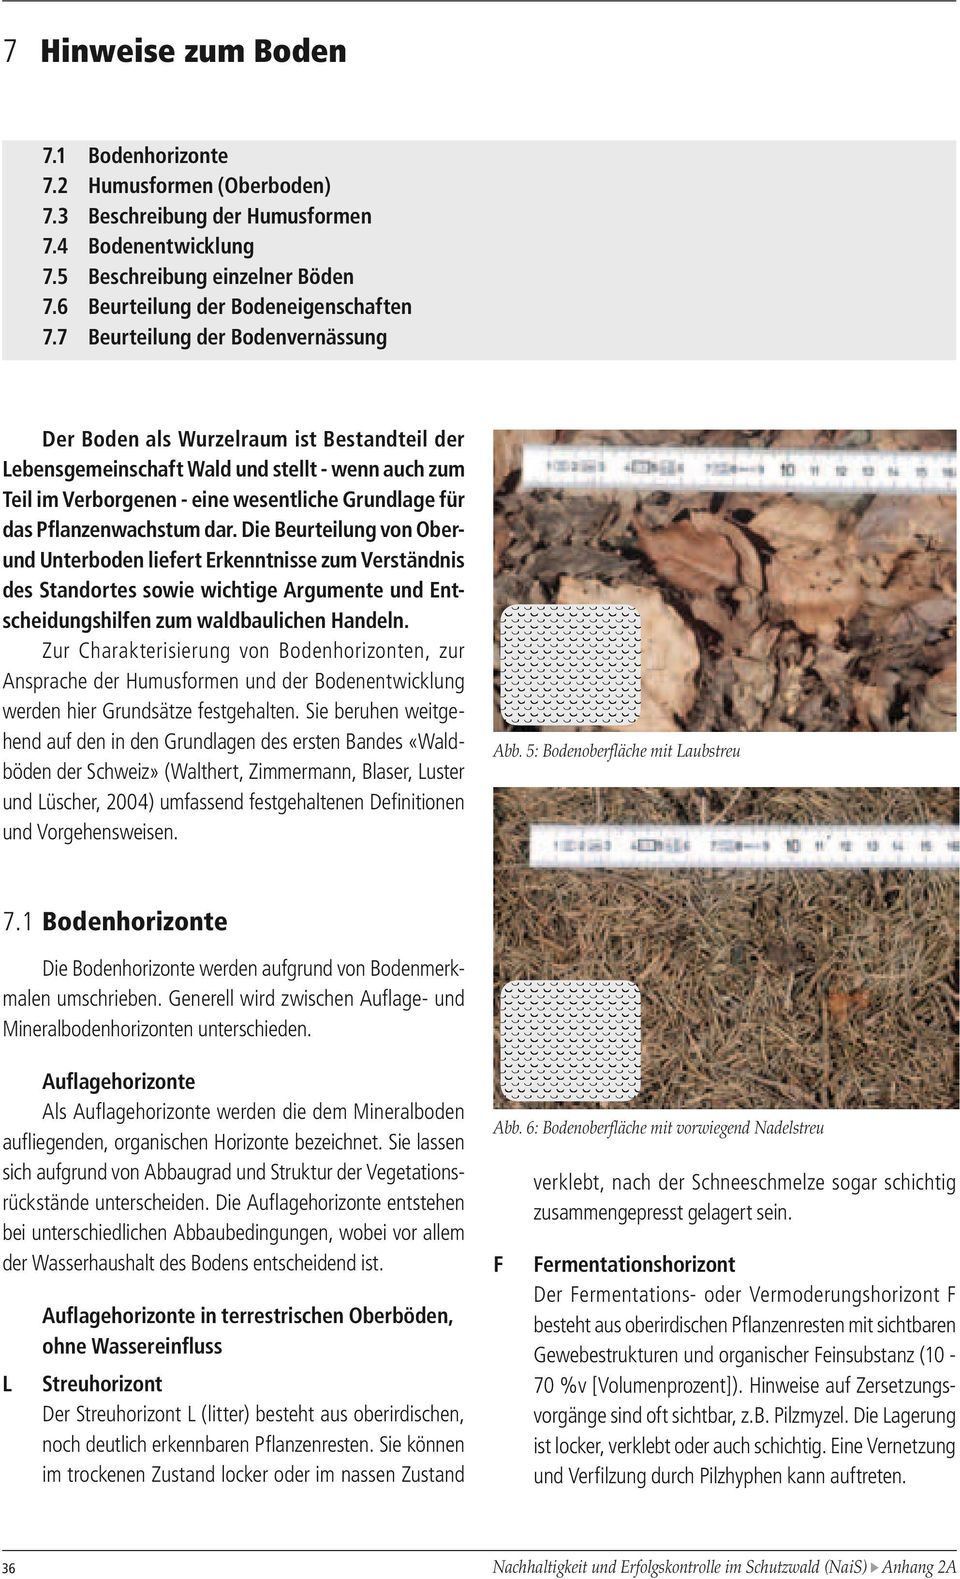 Pflanzenwachstum dar. Die Beurteilung von Oberund Unterboden liefert Erkenntnisse zum Verständnis des Standortes sowie wichtige Argumente und Entscheidungshilfen zum waldbaulichen Handeln.